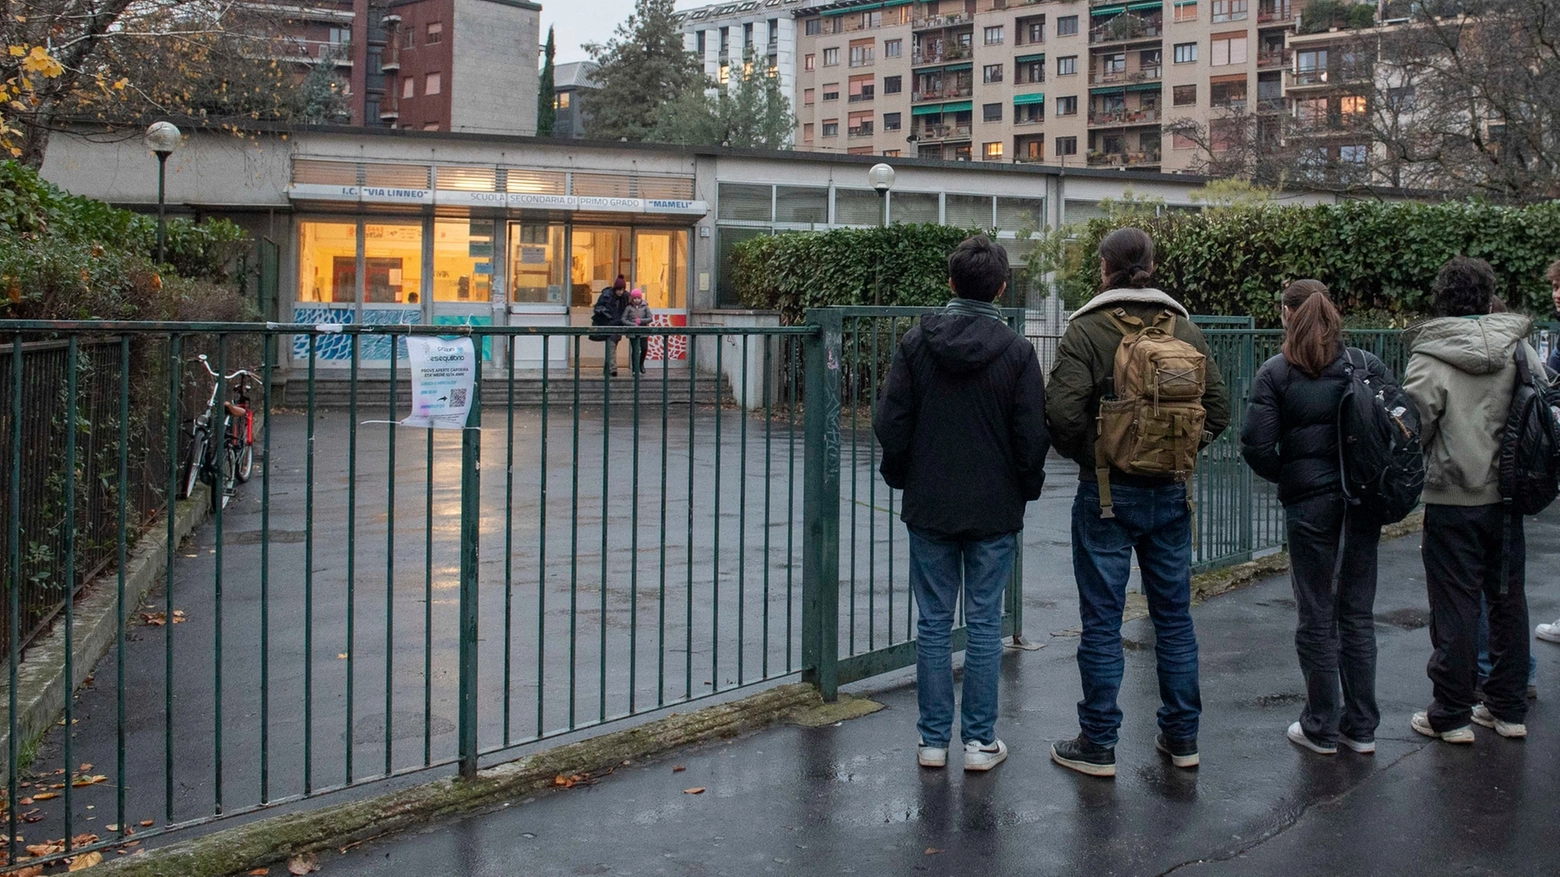 Studenti fuori dalla scuola Mameli di via Linneo (Foto Fasani)